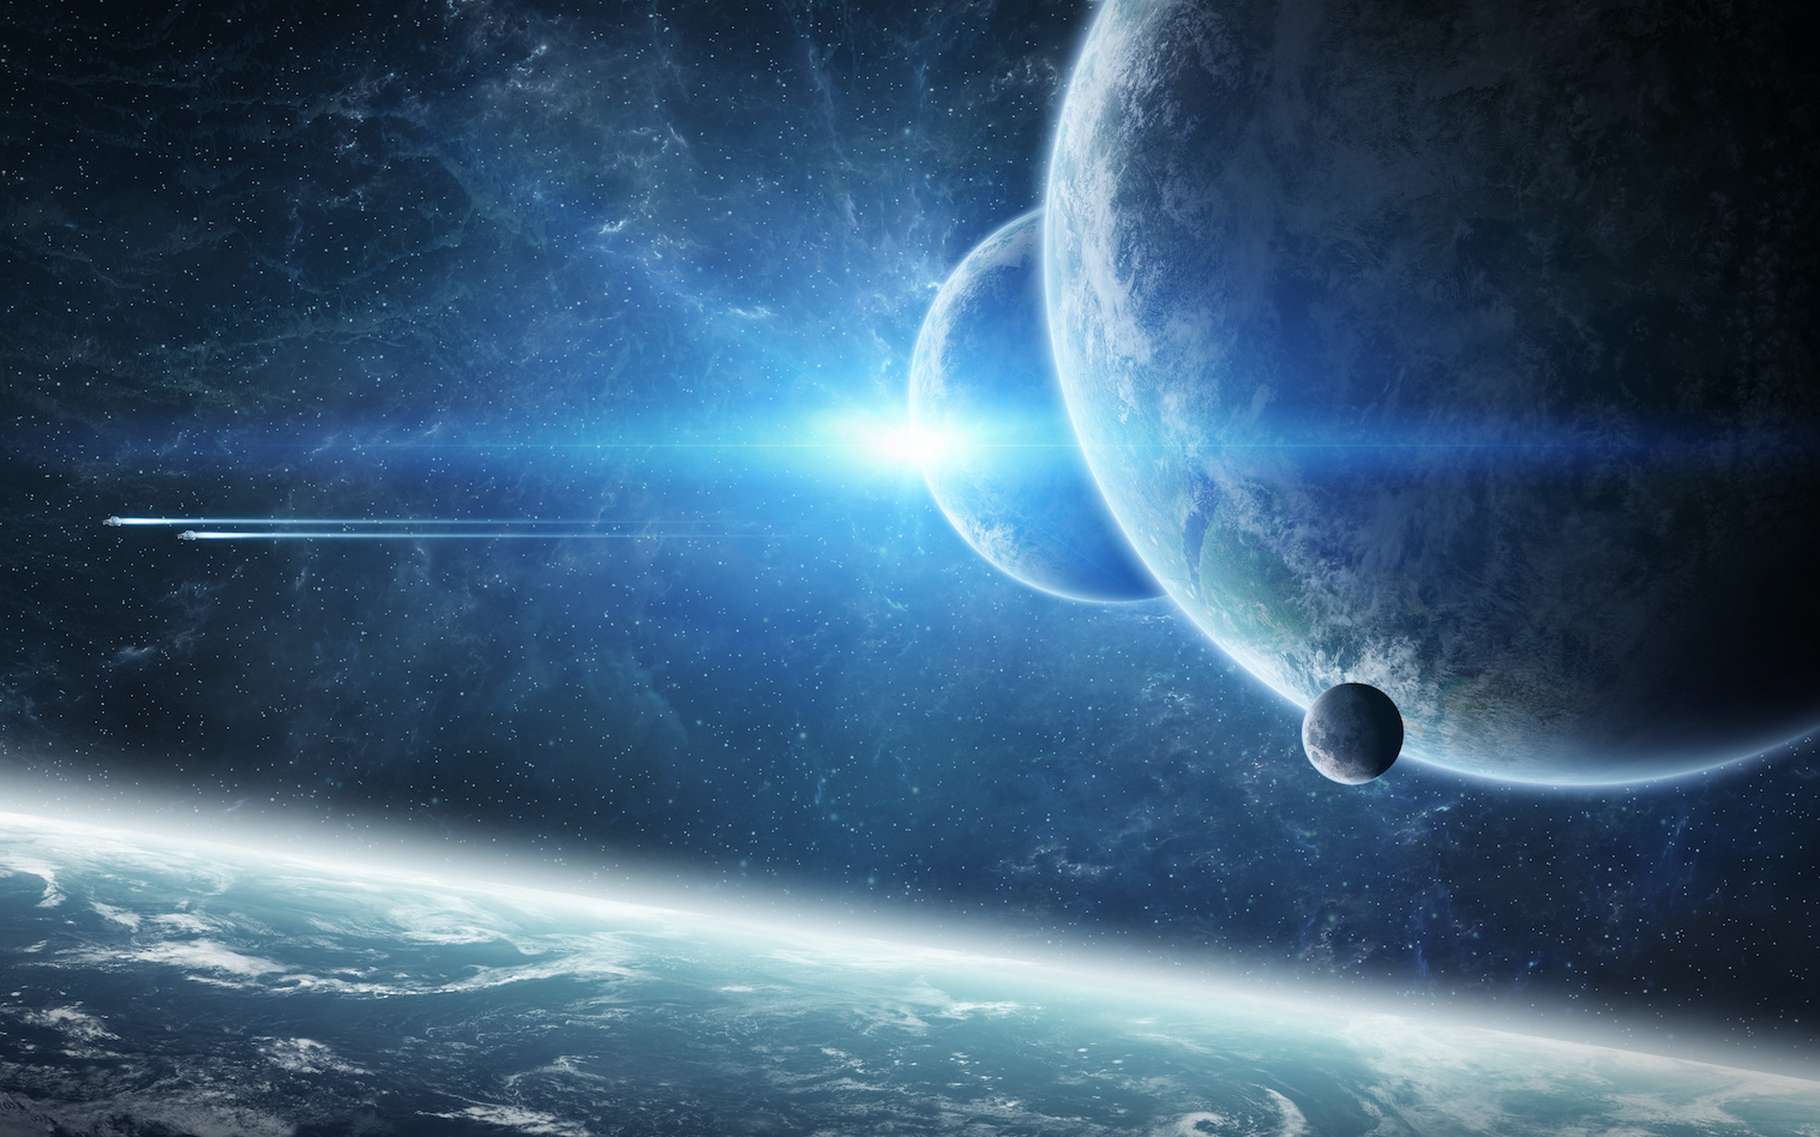 Une vue d'artiste d'un système d'exoplanètes. © sdecoret, Adobe Stock